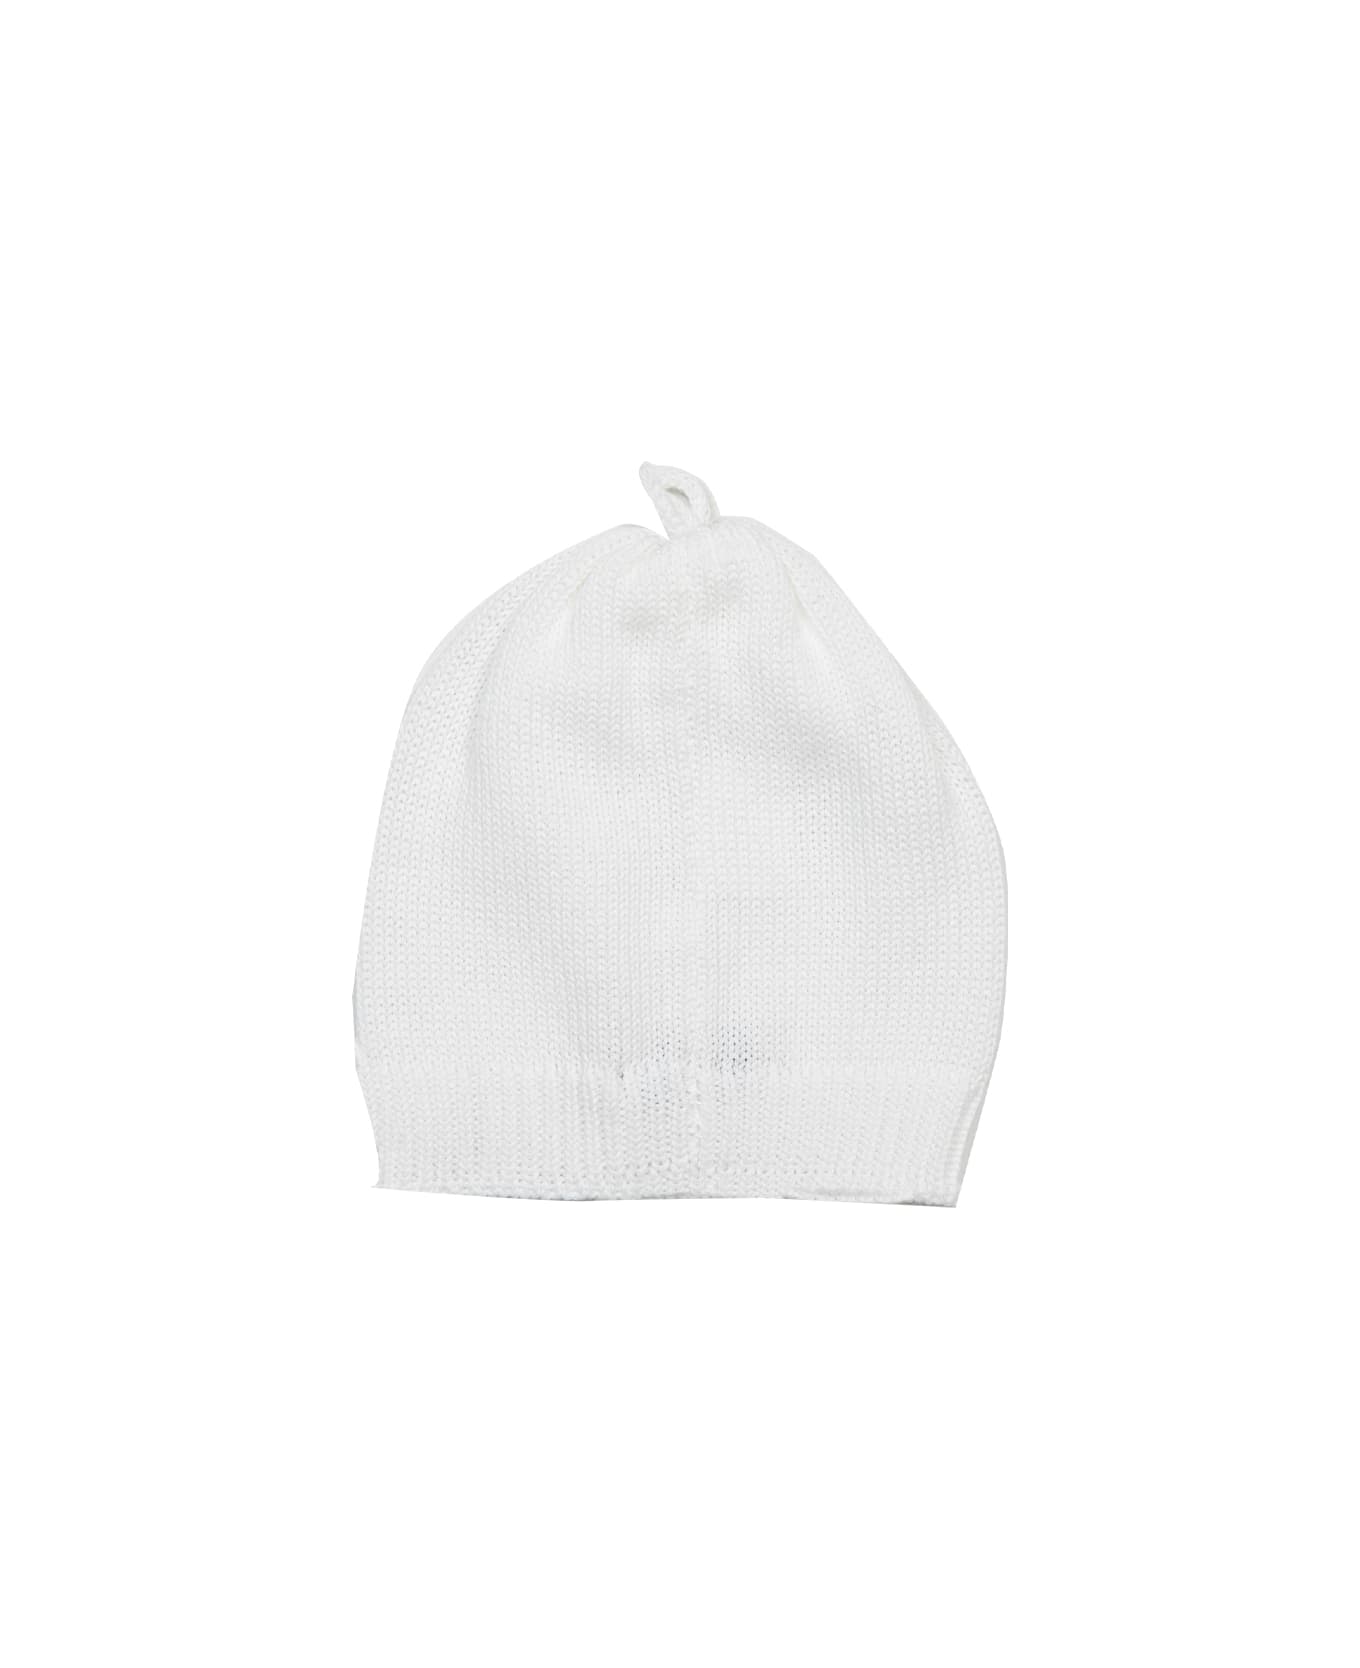 Piccola Giuggiola Cotton Knit Hat - White